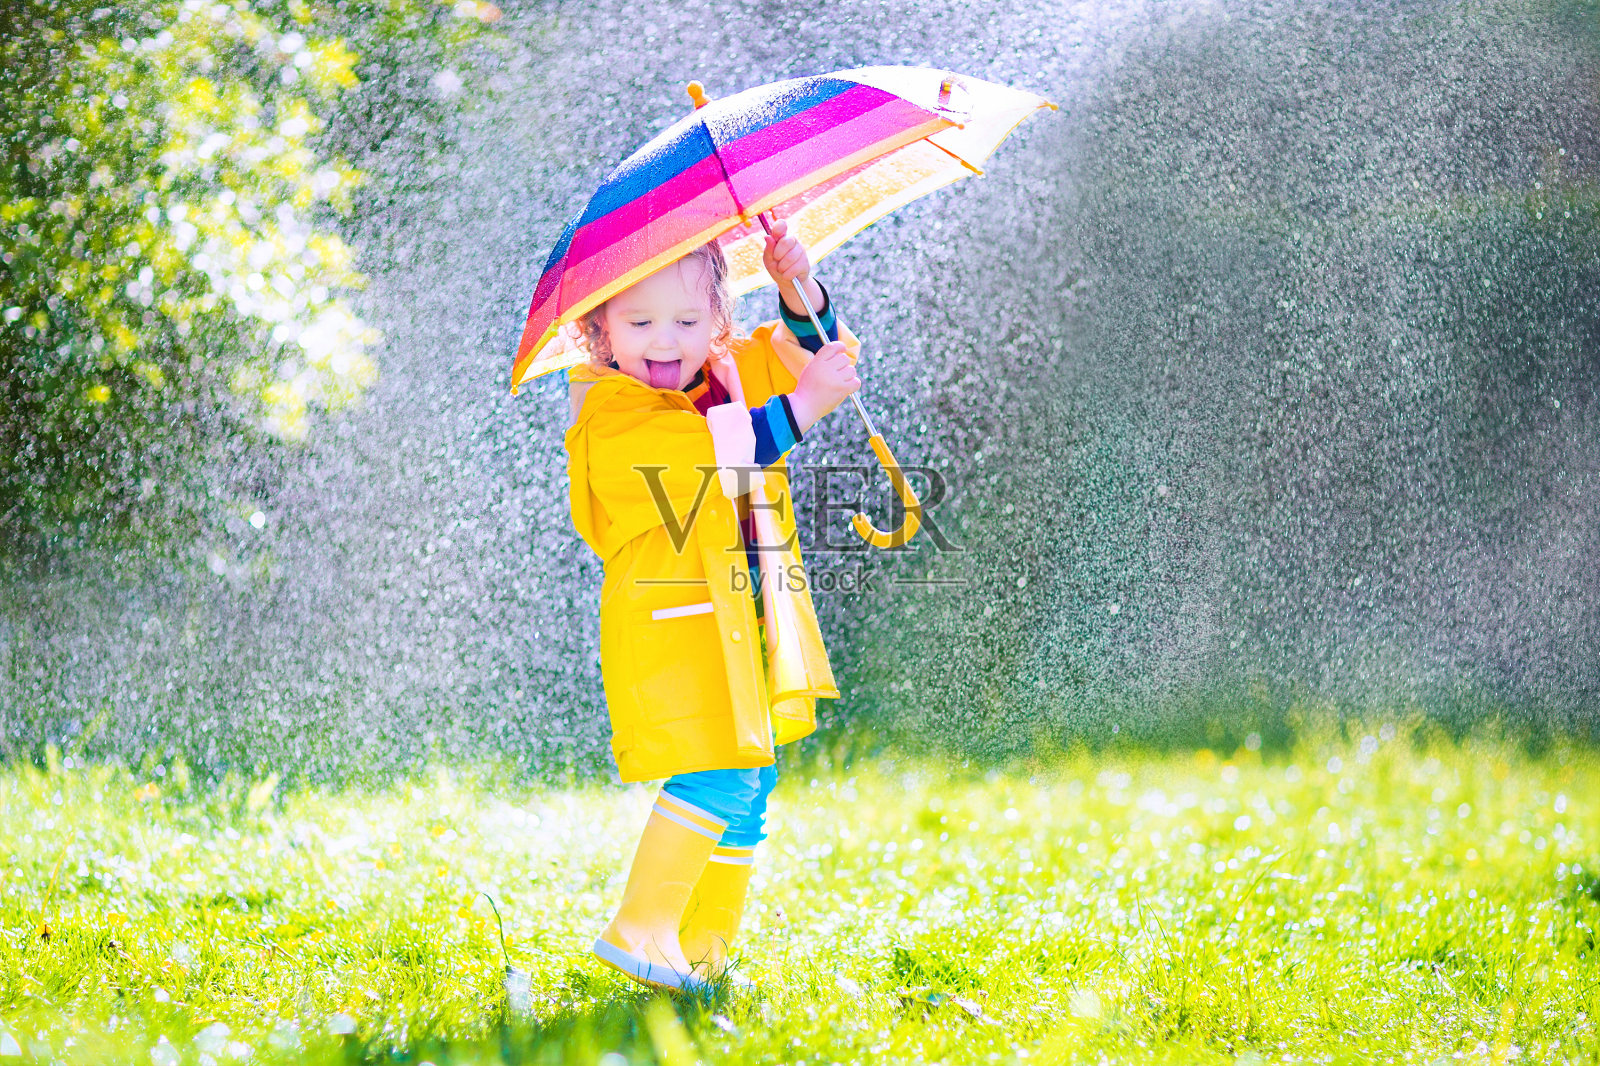 漂亮有趣的小孩拿着伞在雨中玩耍照片摄影图片